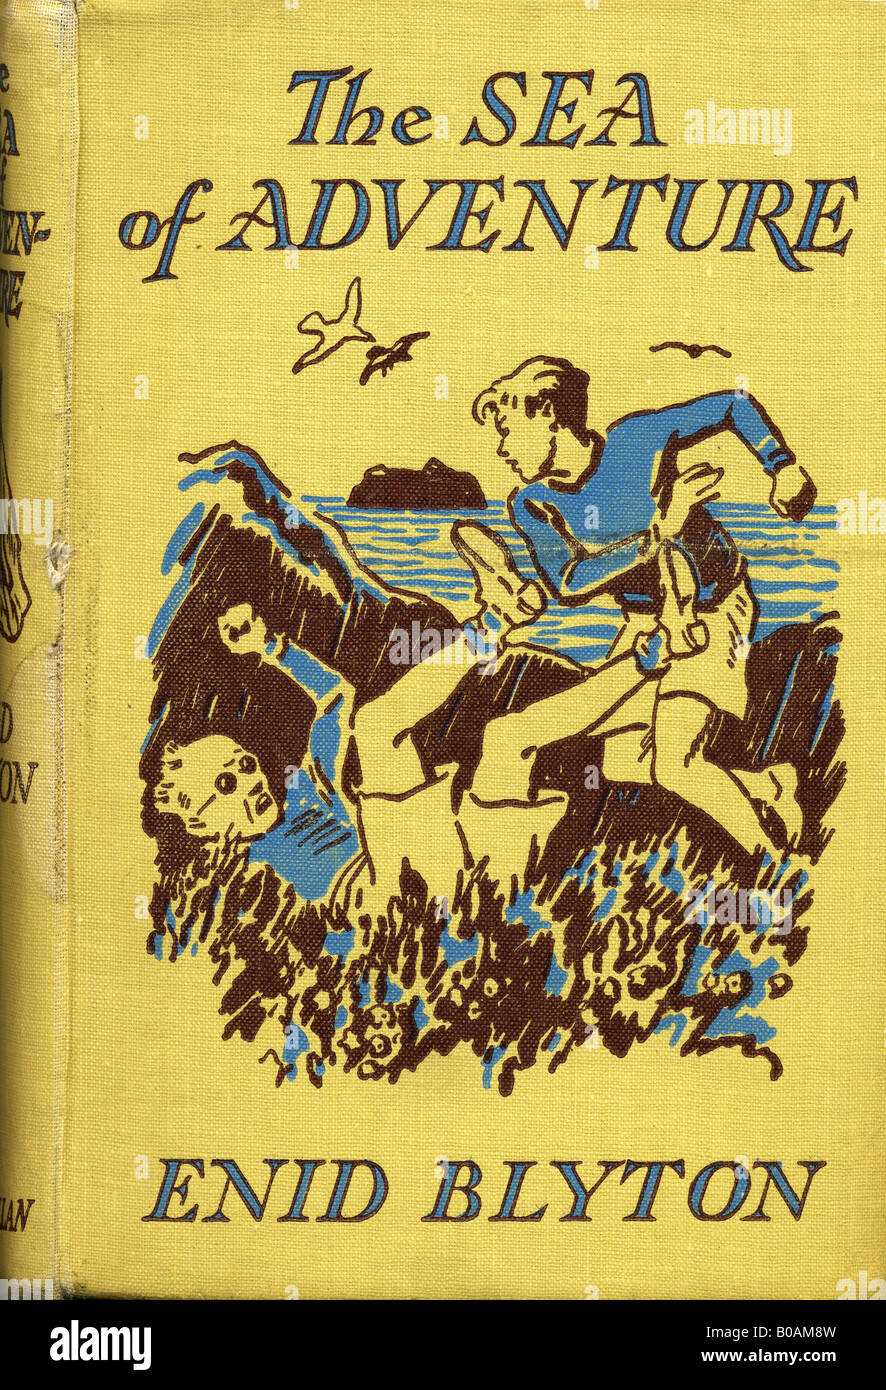 Enid Blyton Kinder Roman The Sea of Adventure gebundene Buch 1949 für redaktionelle Verwendung nur Stockfoto